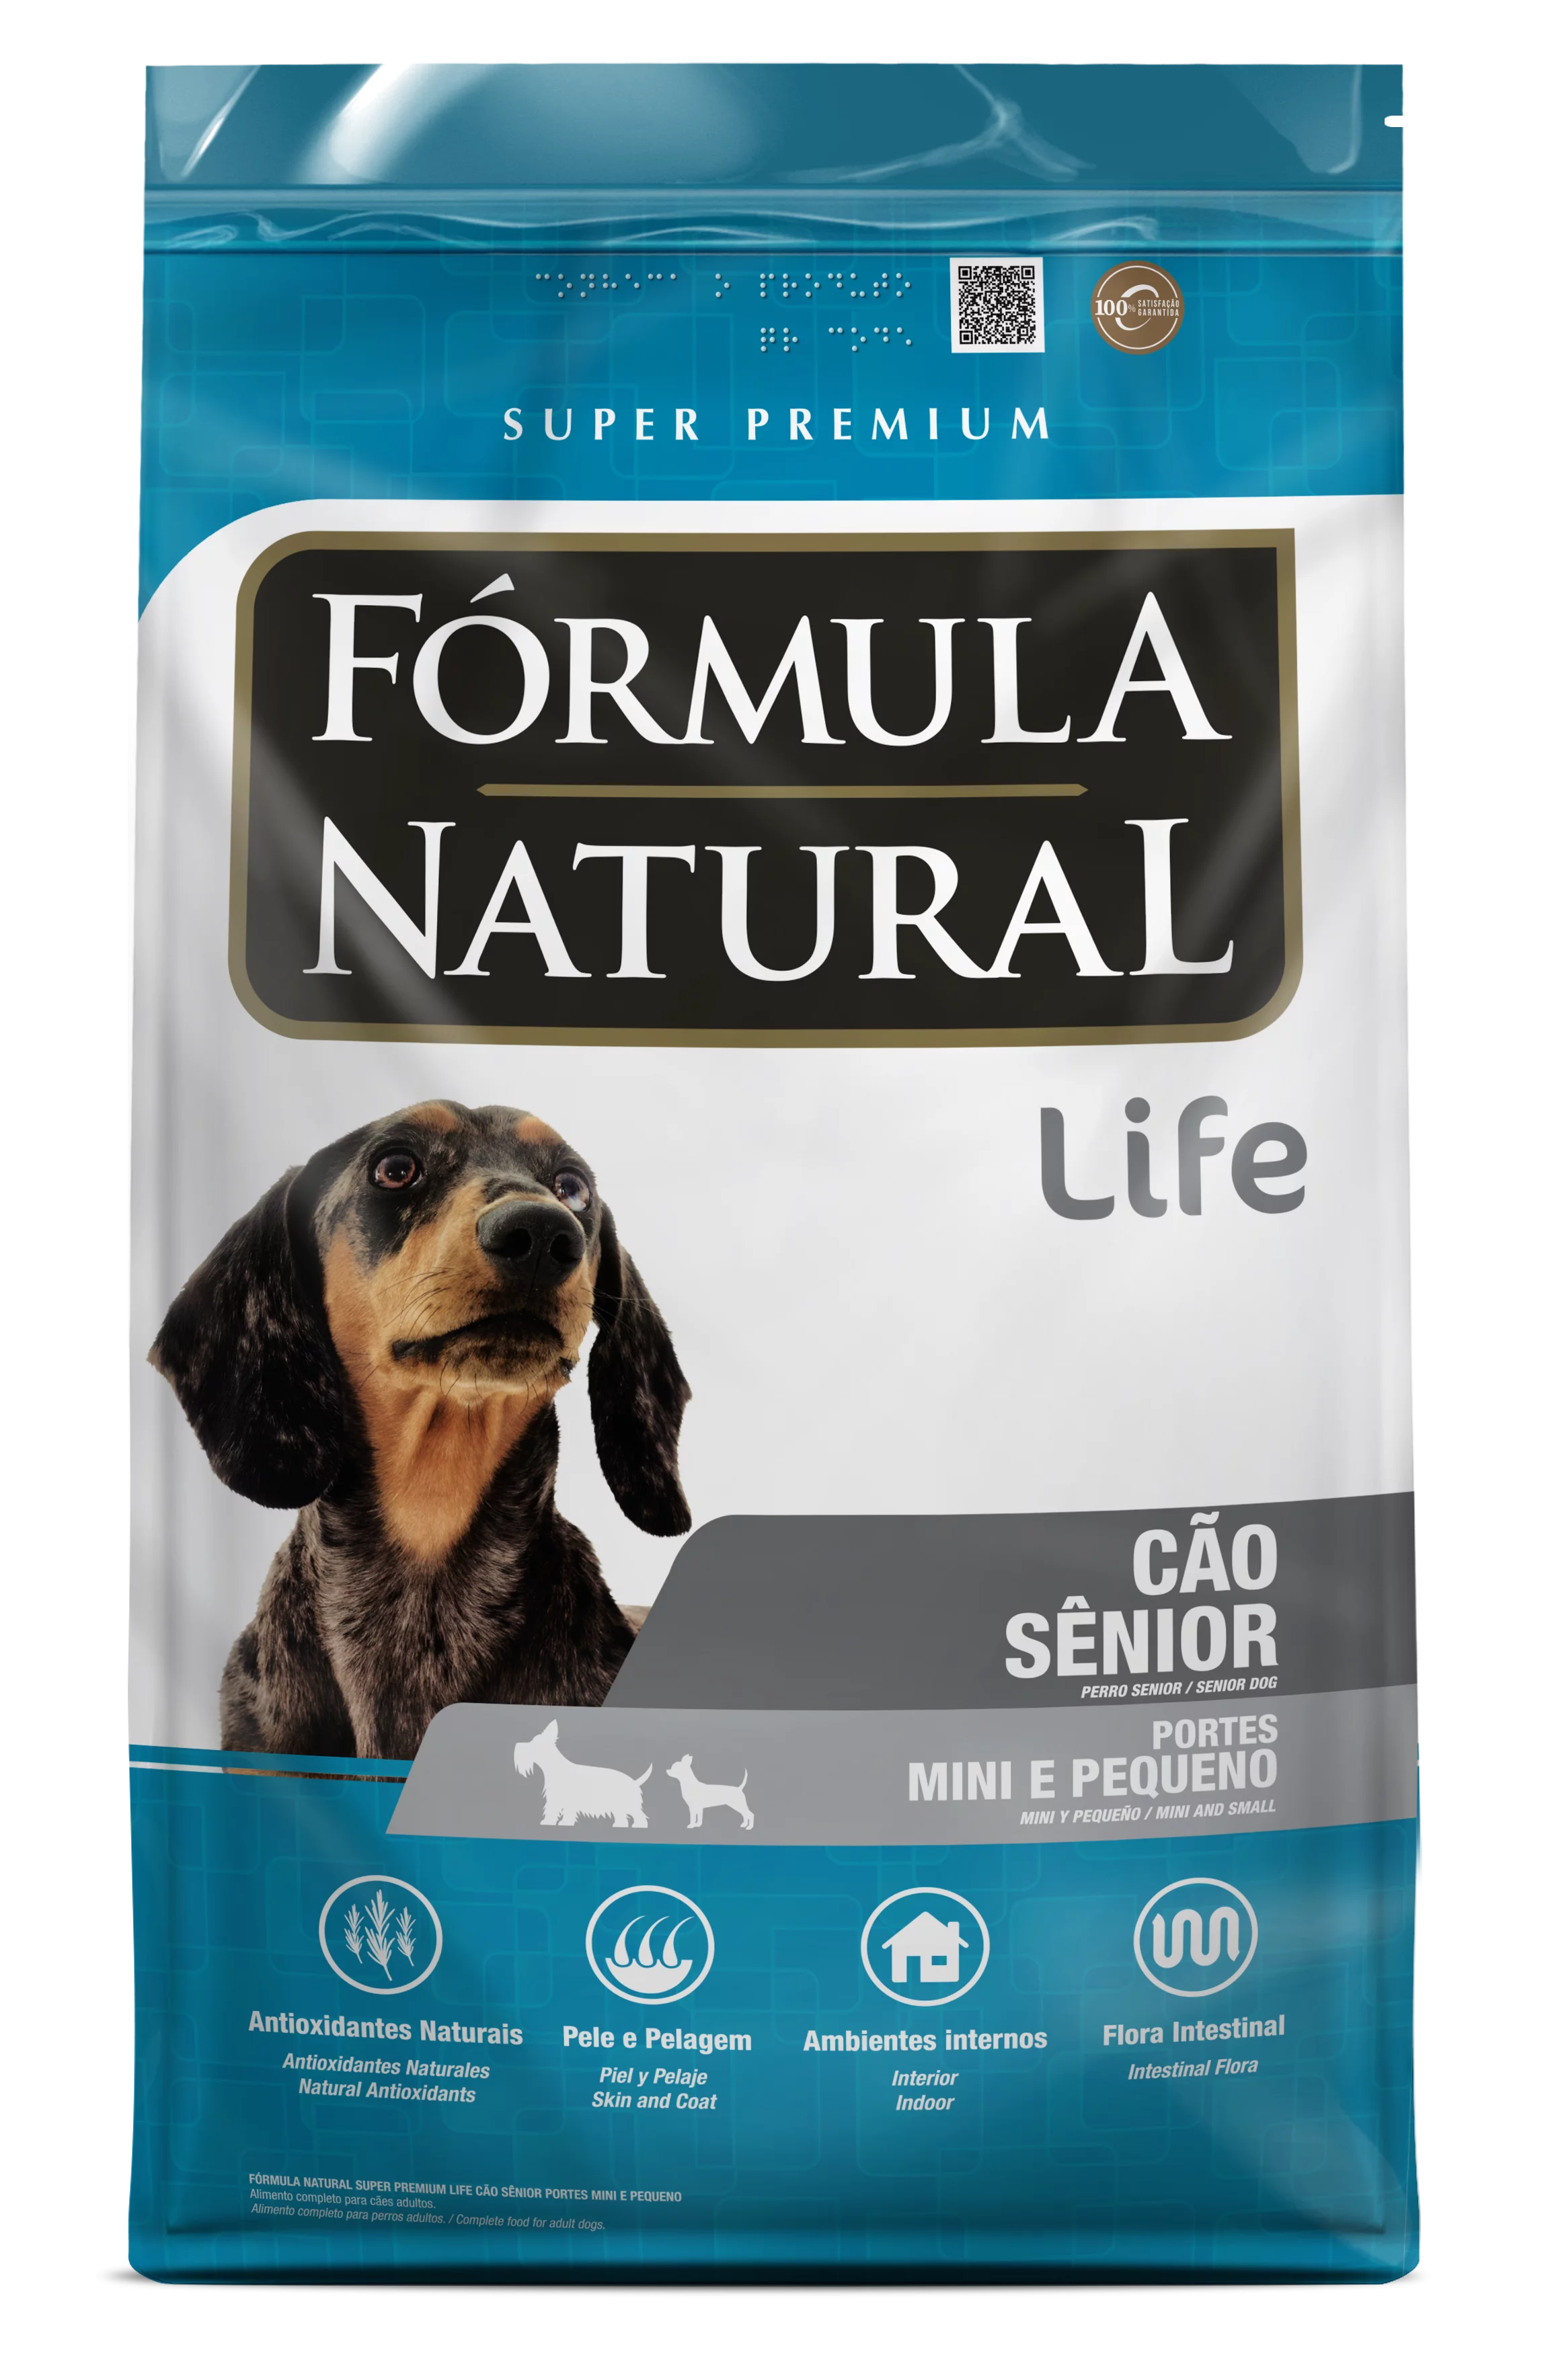 Fórmula Natural Super Premium Life Cães Sênior Portes Mini e Pequeno